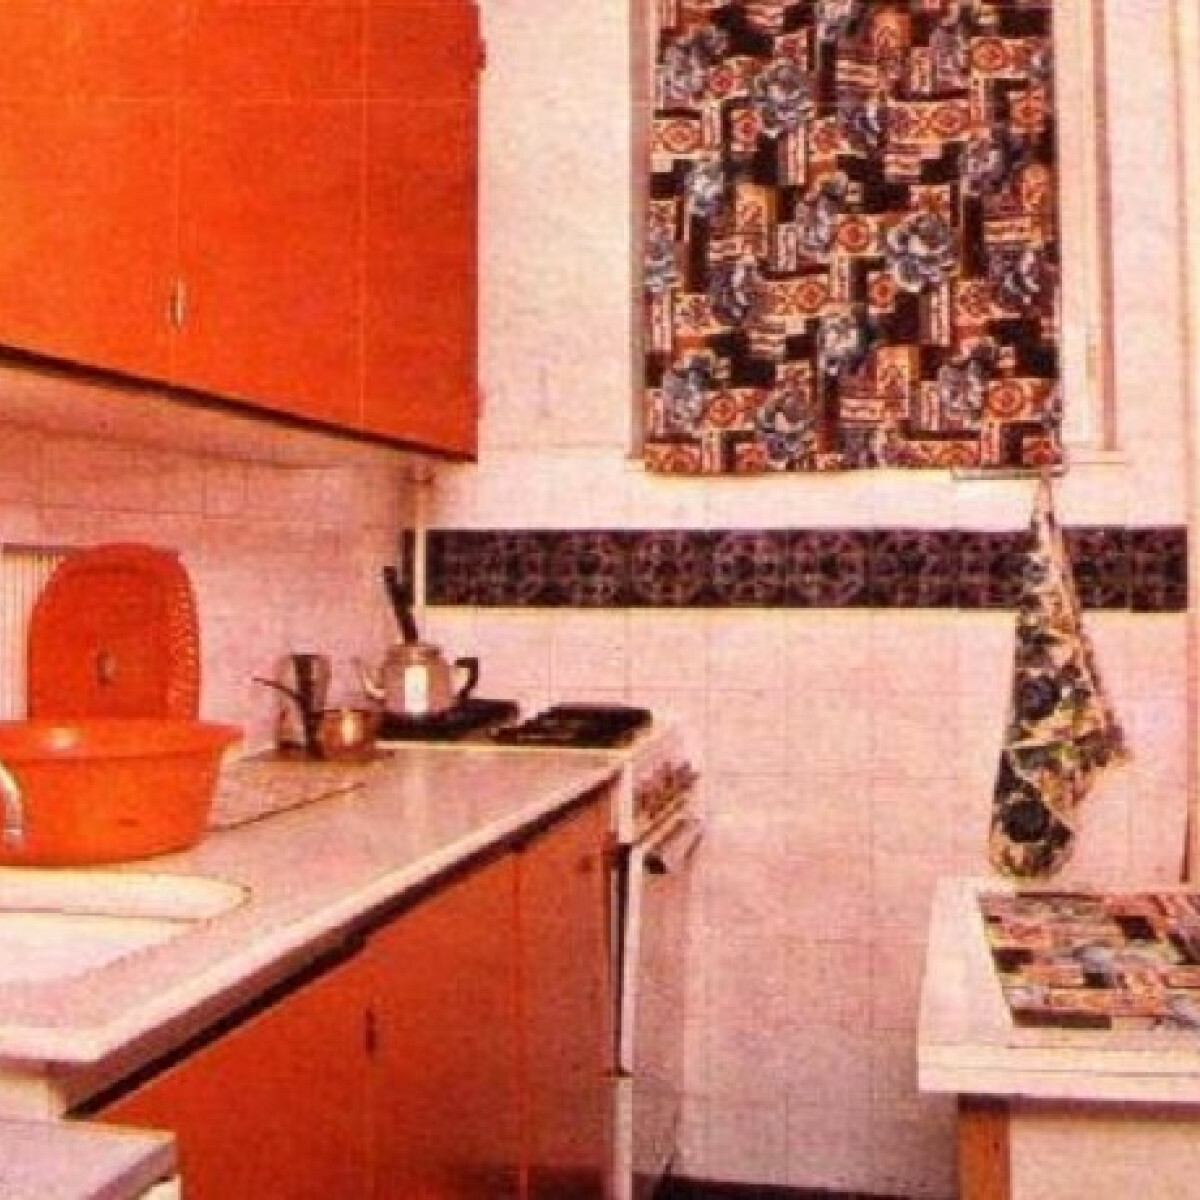 Így nézett ki a konyhánk a '80-as években